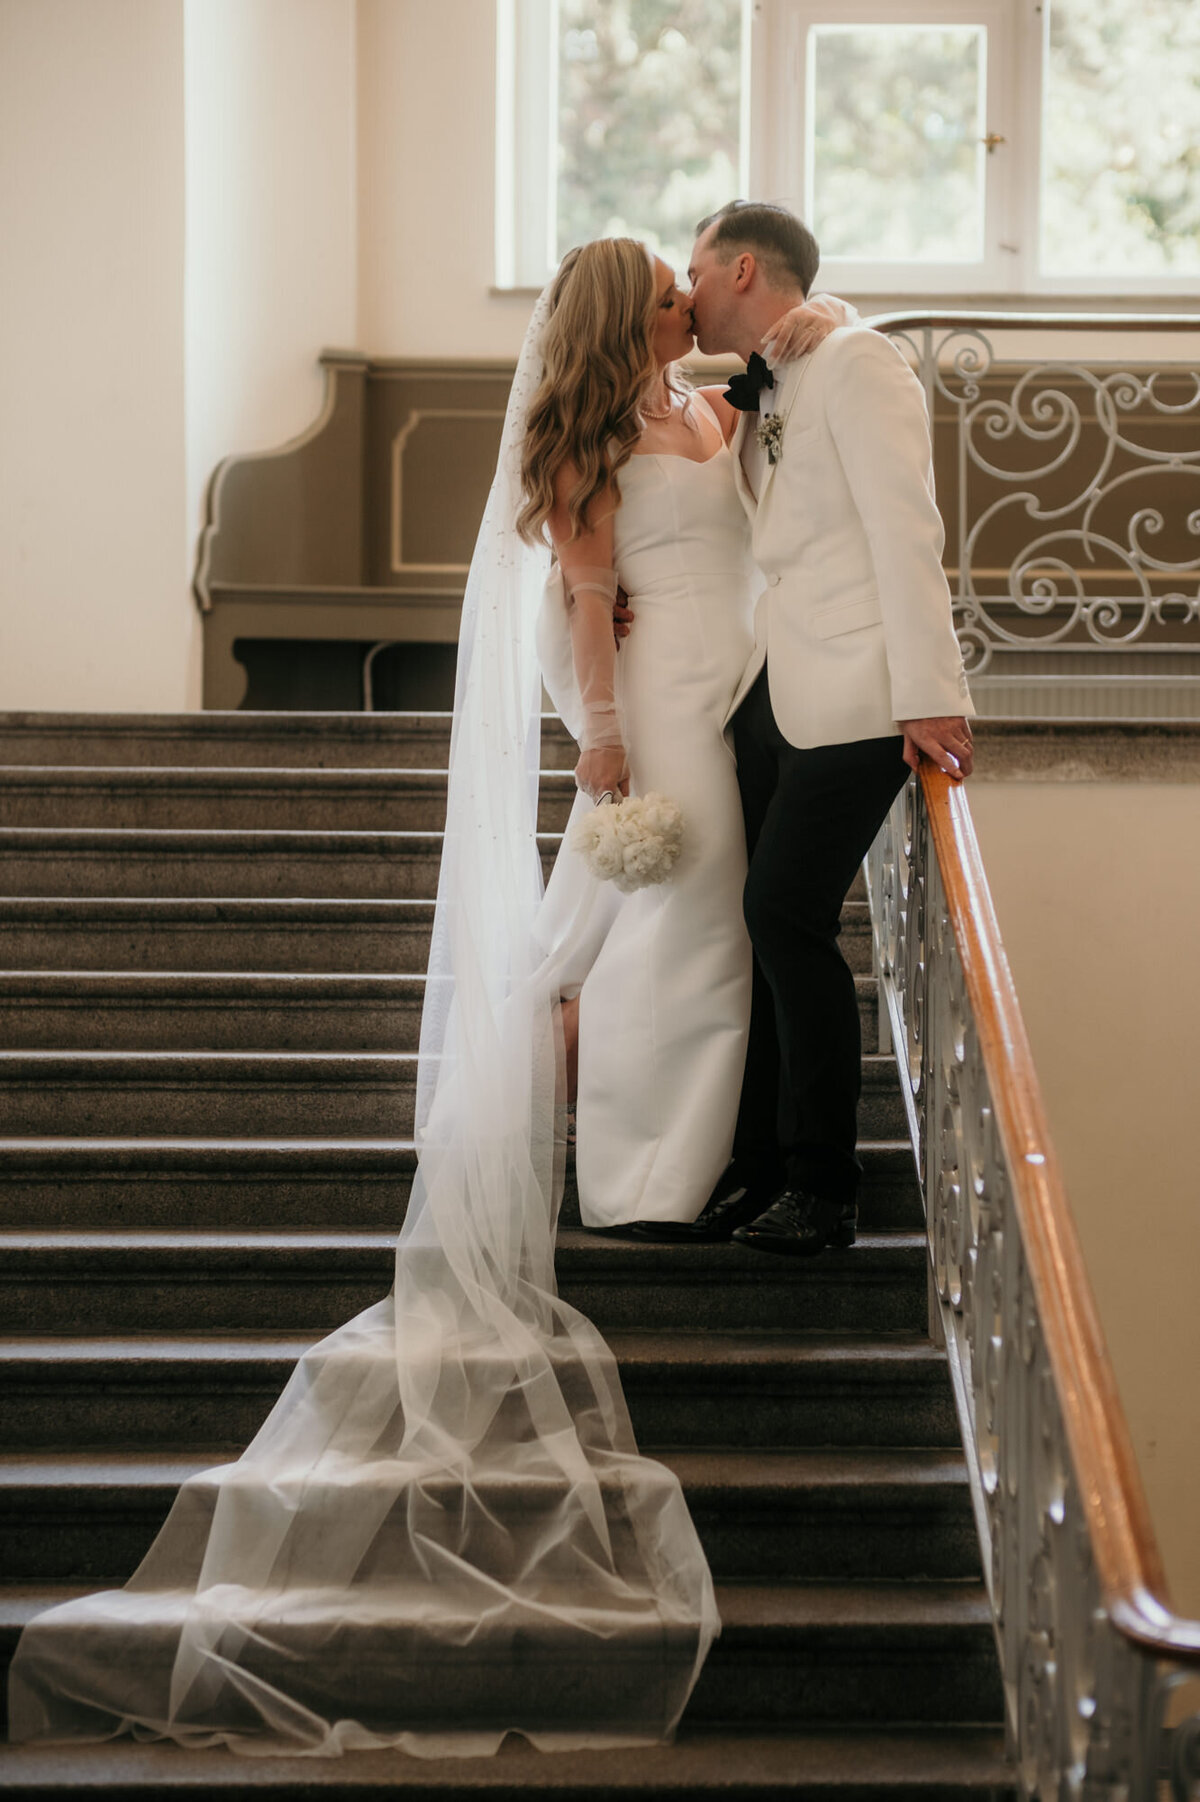 Auf einer Treppe im Gebäude stehend küsst sich das frisch verheiratete Paar.